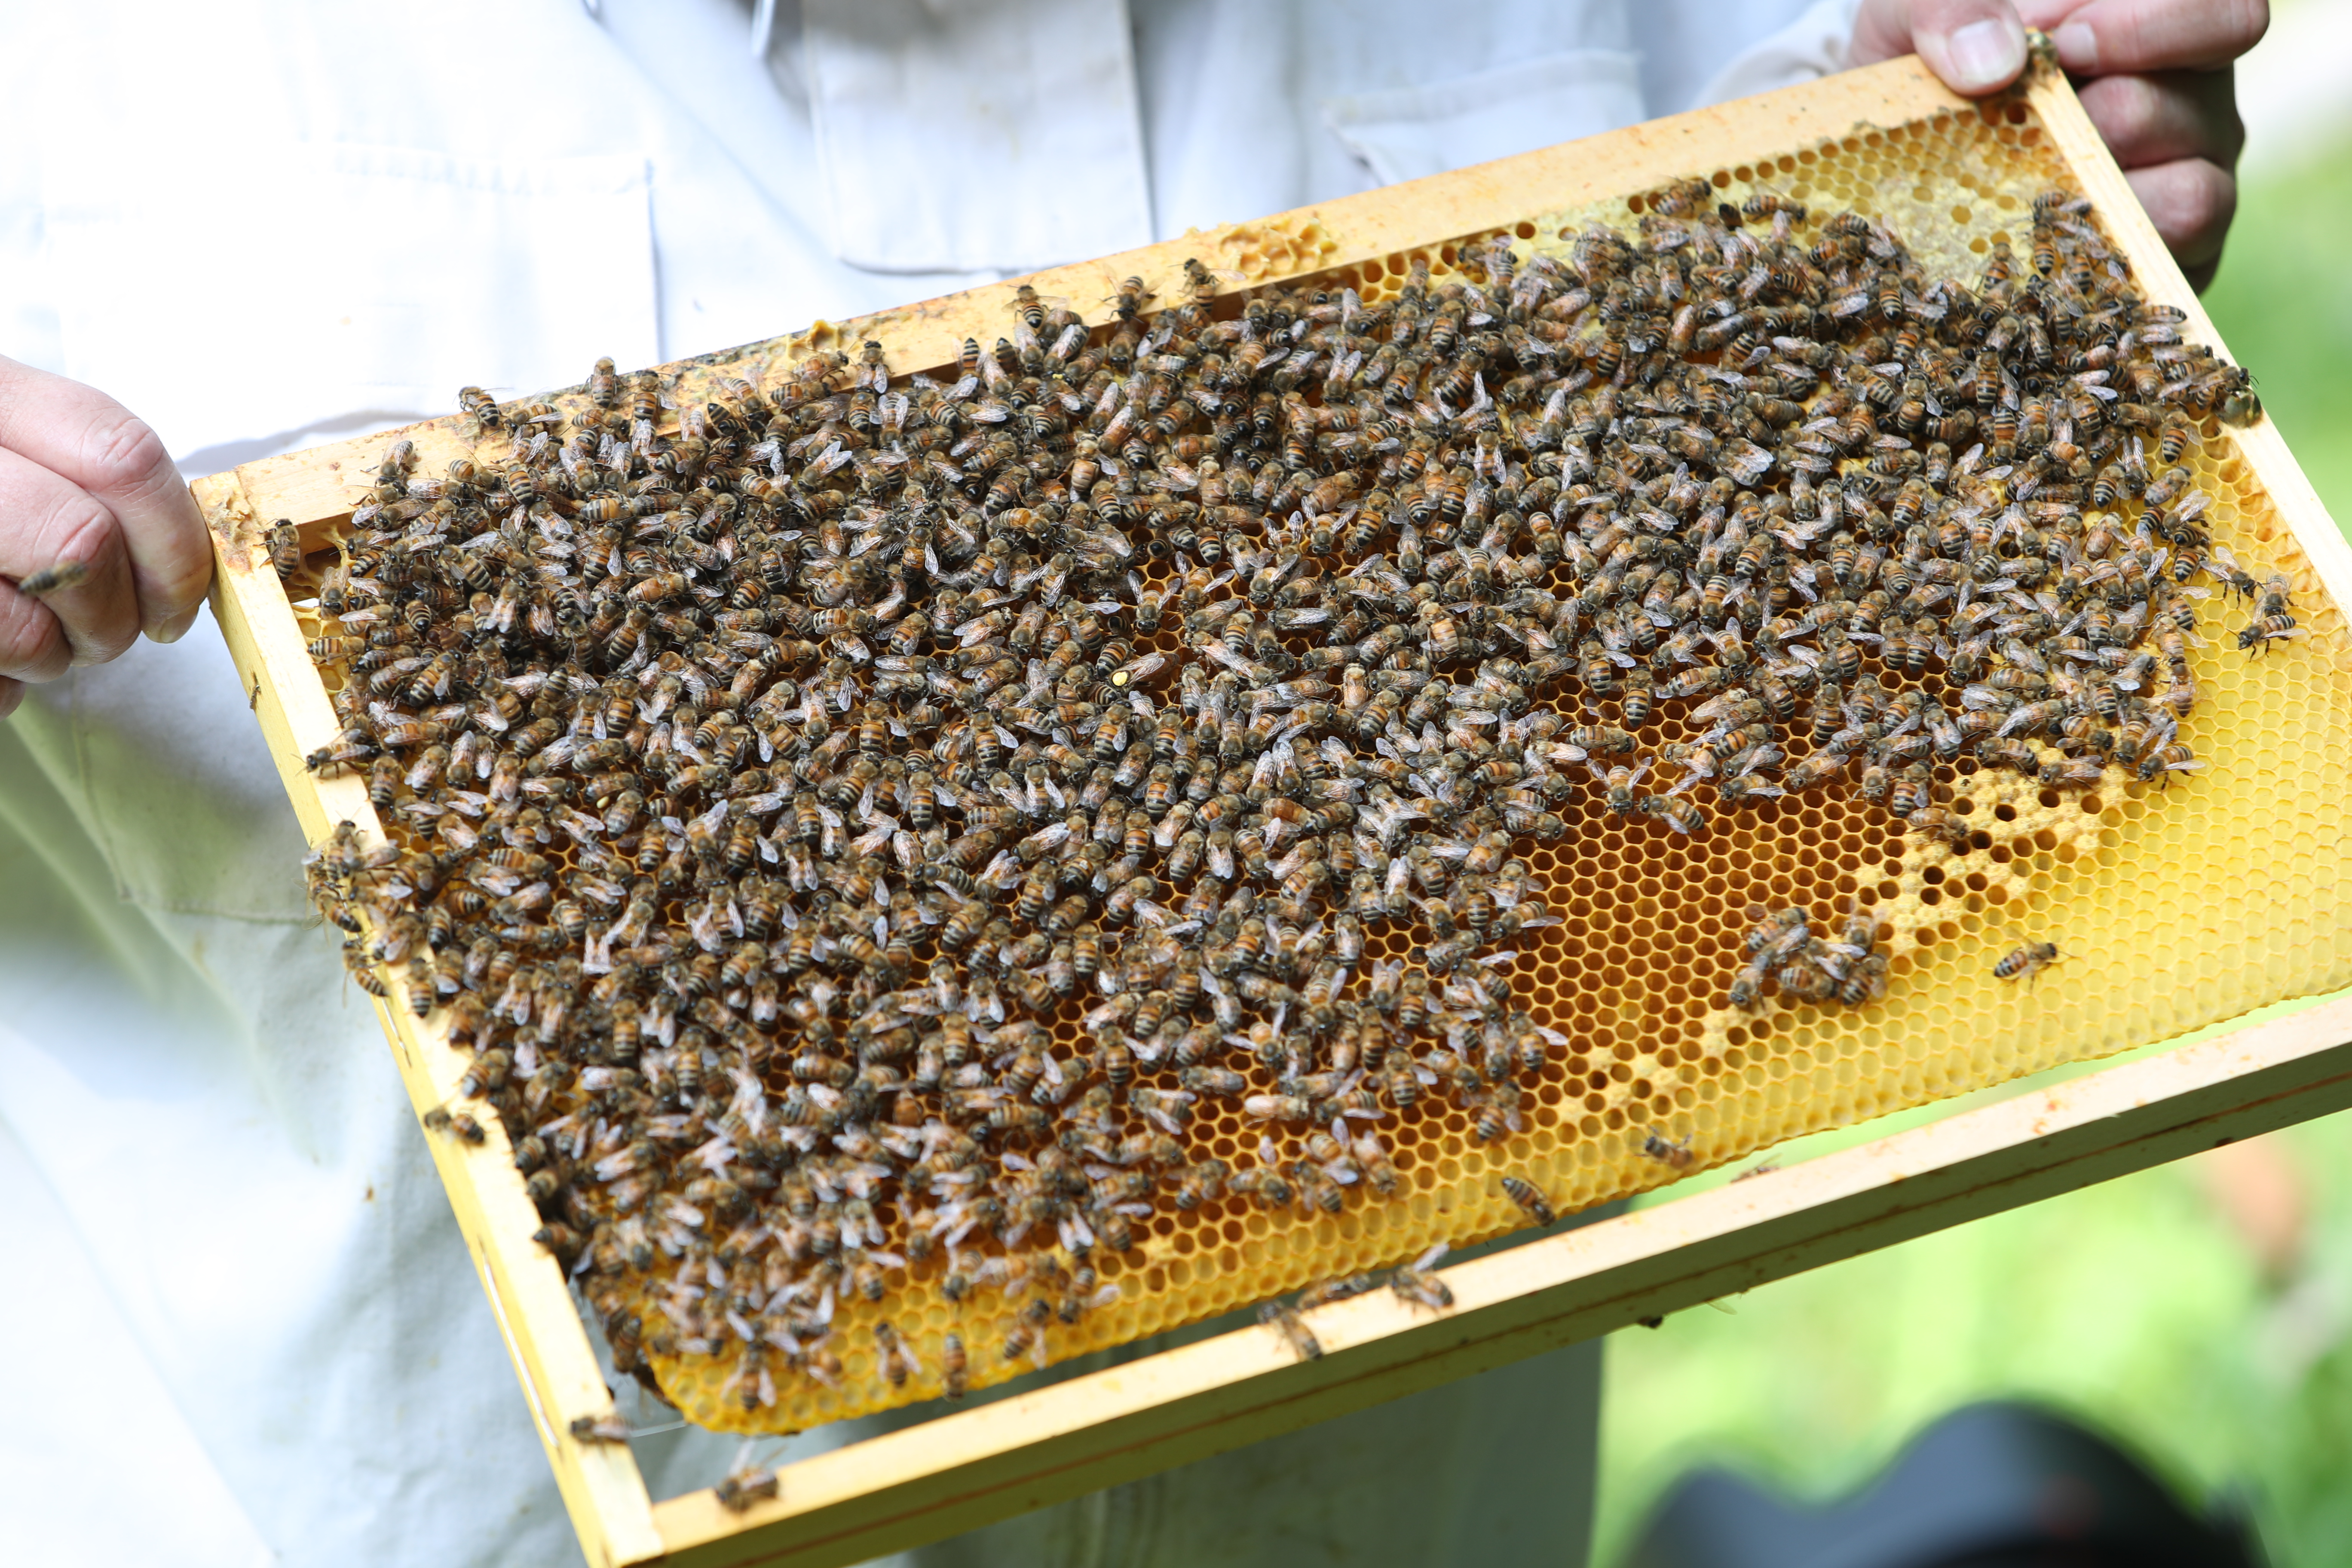 Imkerin hält einen Bienenstockrahmen, der dicht mit Bienen bedeckt ist